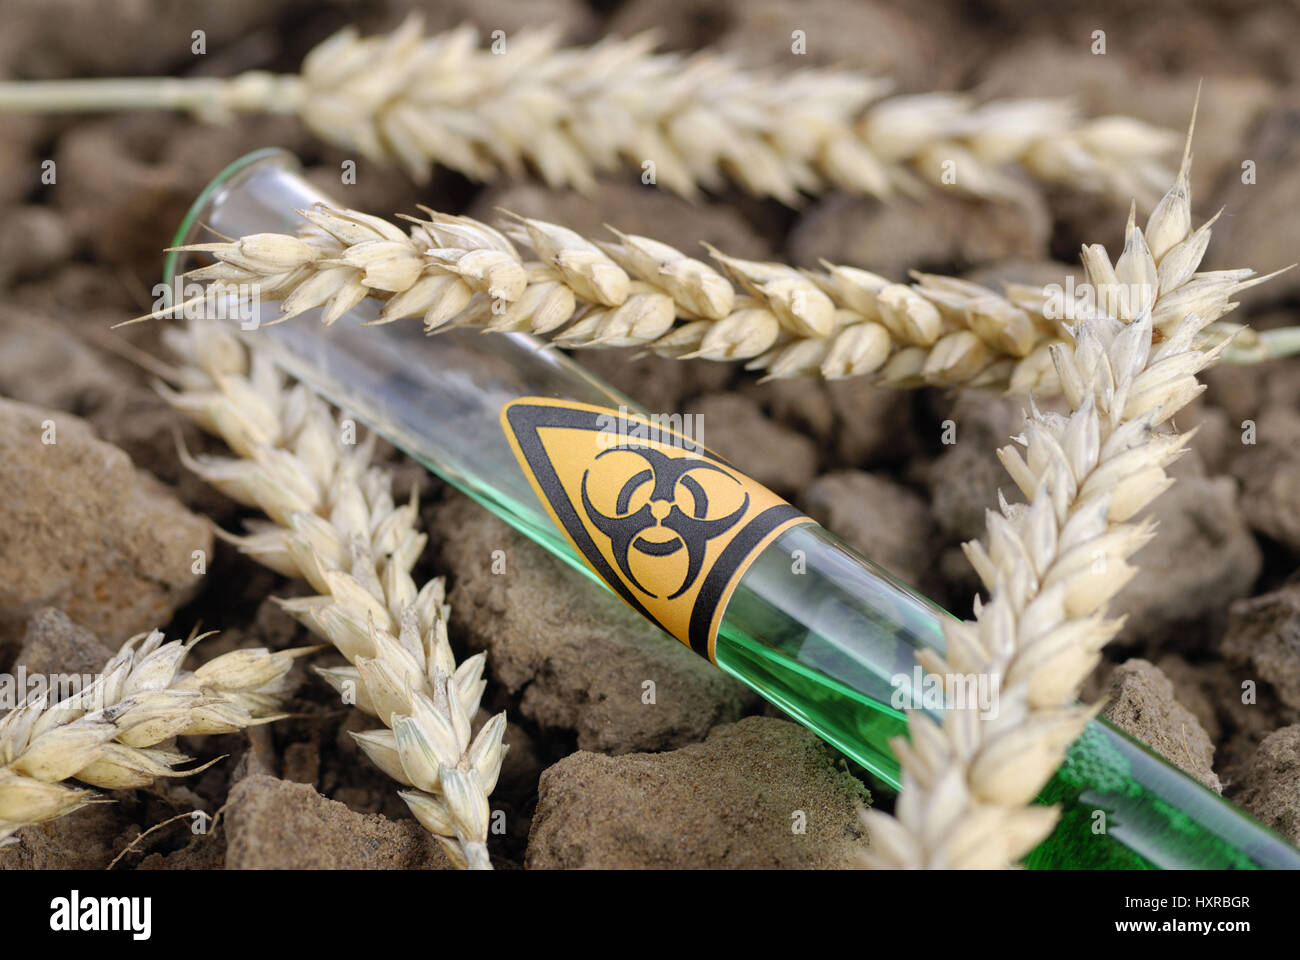 Tubo de ensayo con el símbolo de peligro y de biología, genética del trigo trigo oídos, mit Reagenzglas Biogefährdung-Symbol und Weizenähren, Gen-Weizen Foto de stock